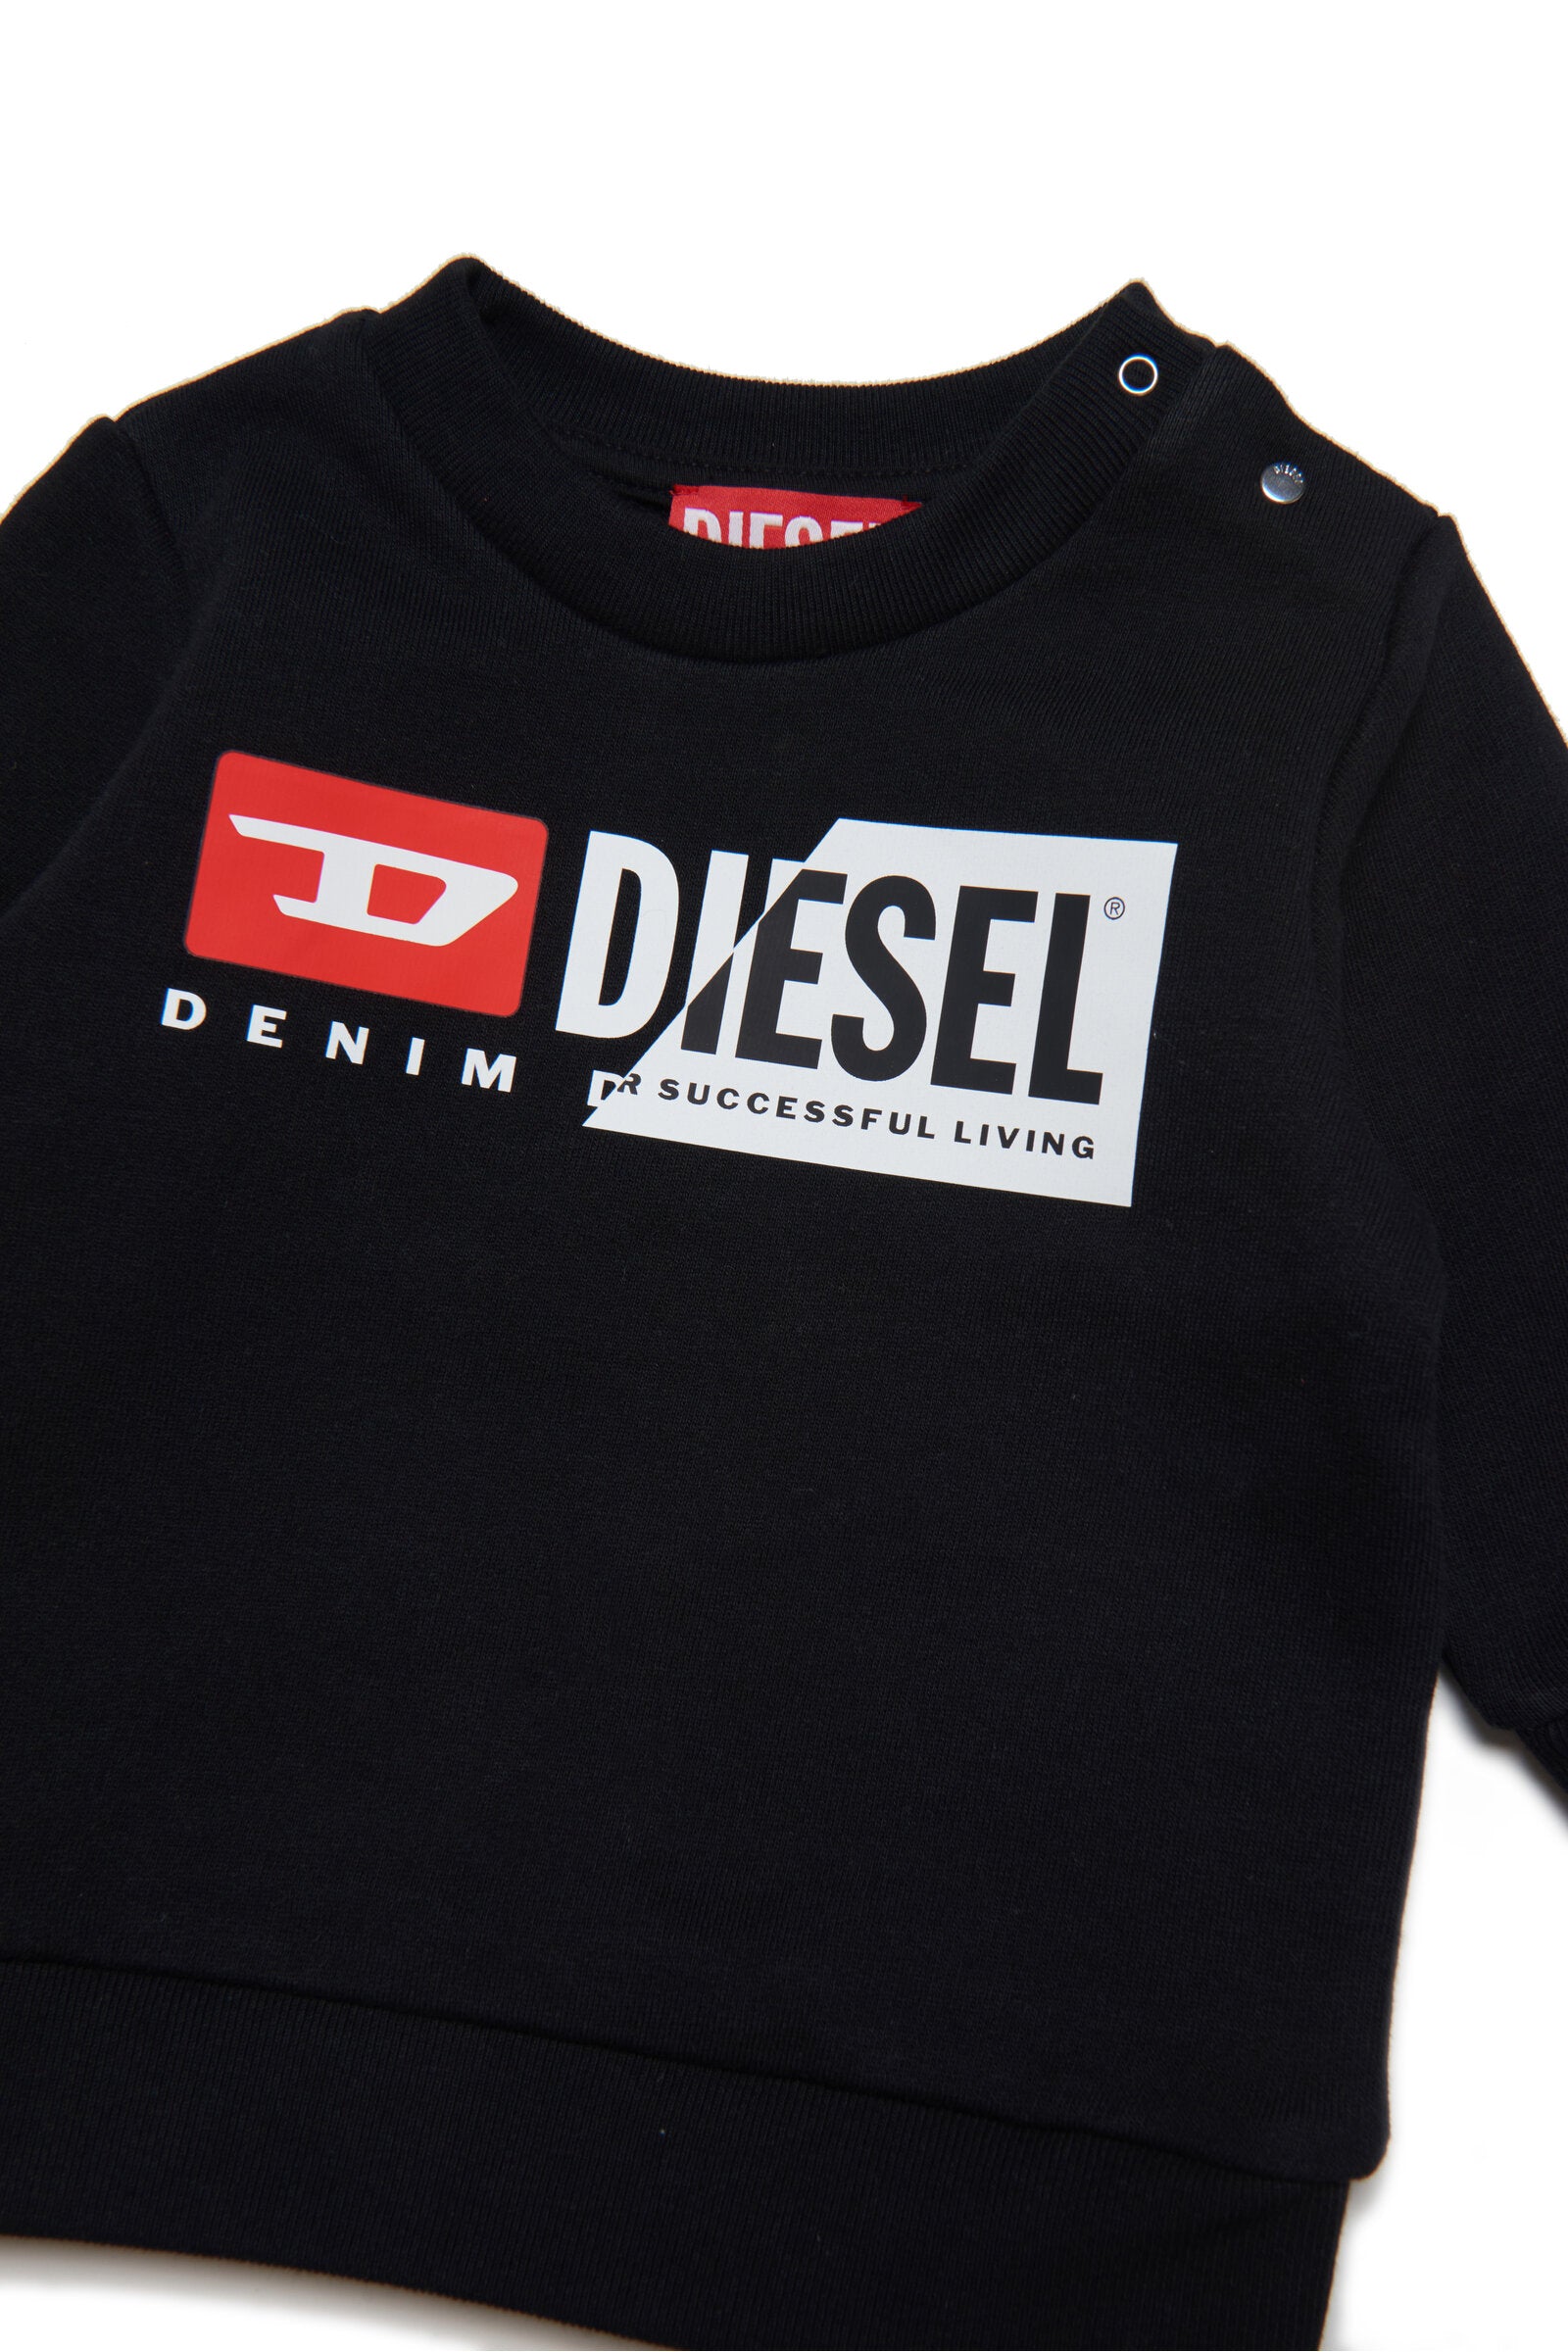 Diesel doubleのロゴとスナップボタン留めのブラックのスウェット